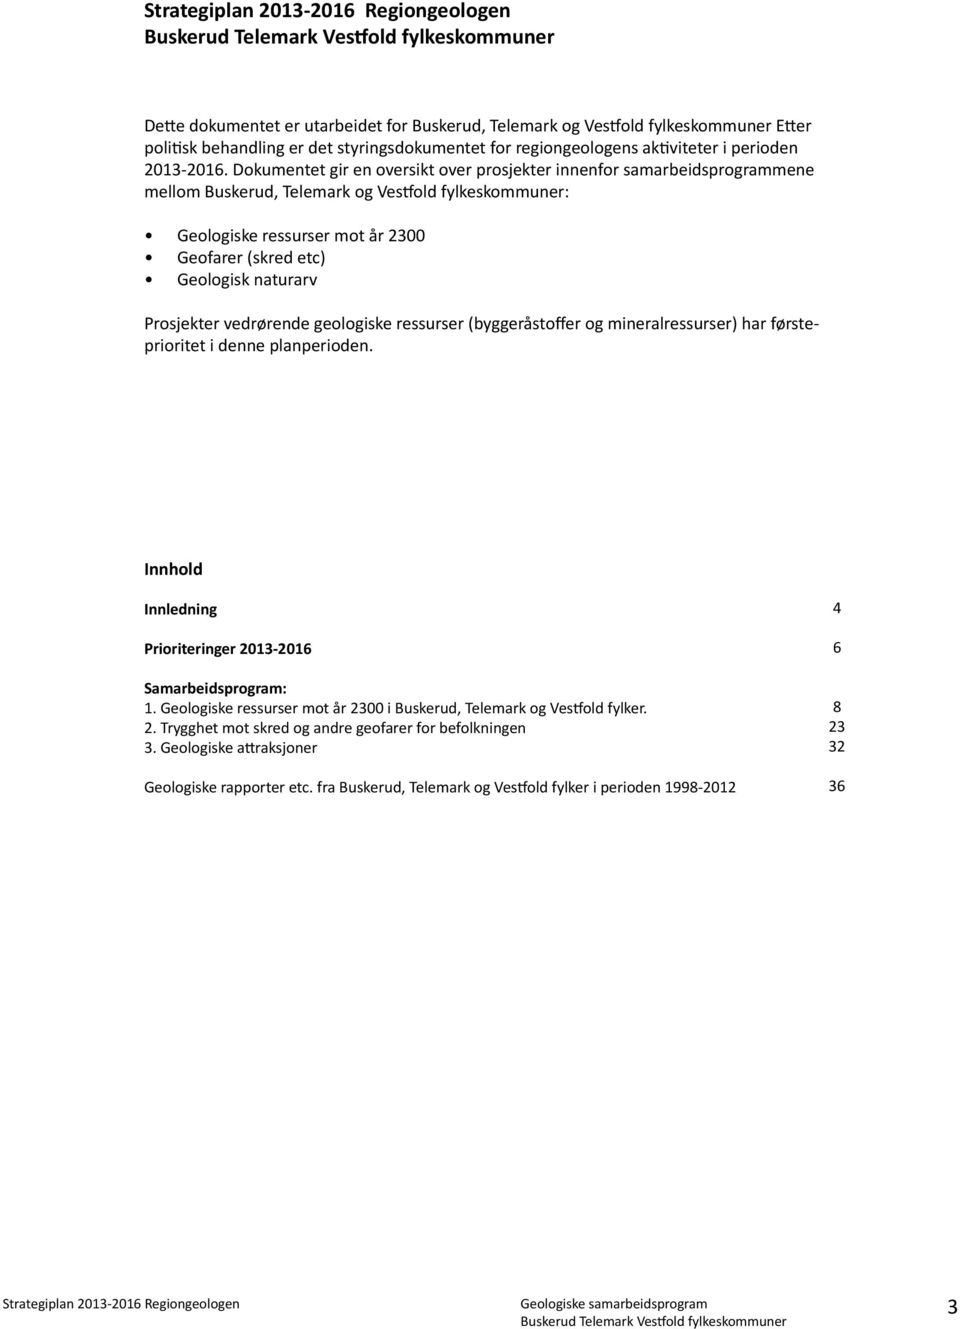 Dokumentet gir en oversikt over prosjekter innenfor samarbeidsprogrammene mellom Buskerud, Telemark og Vestfold fylkeskommuner: Geologiske ressurser mot år 2300 Geofarer (skred etc) Geologisk